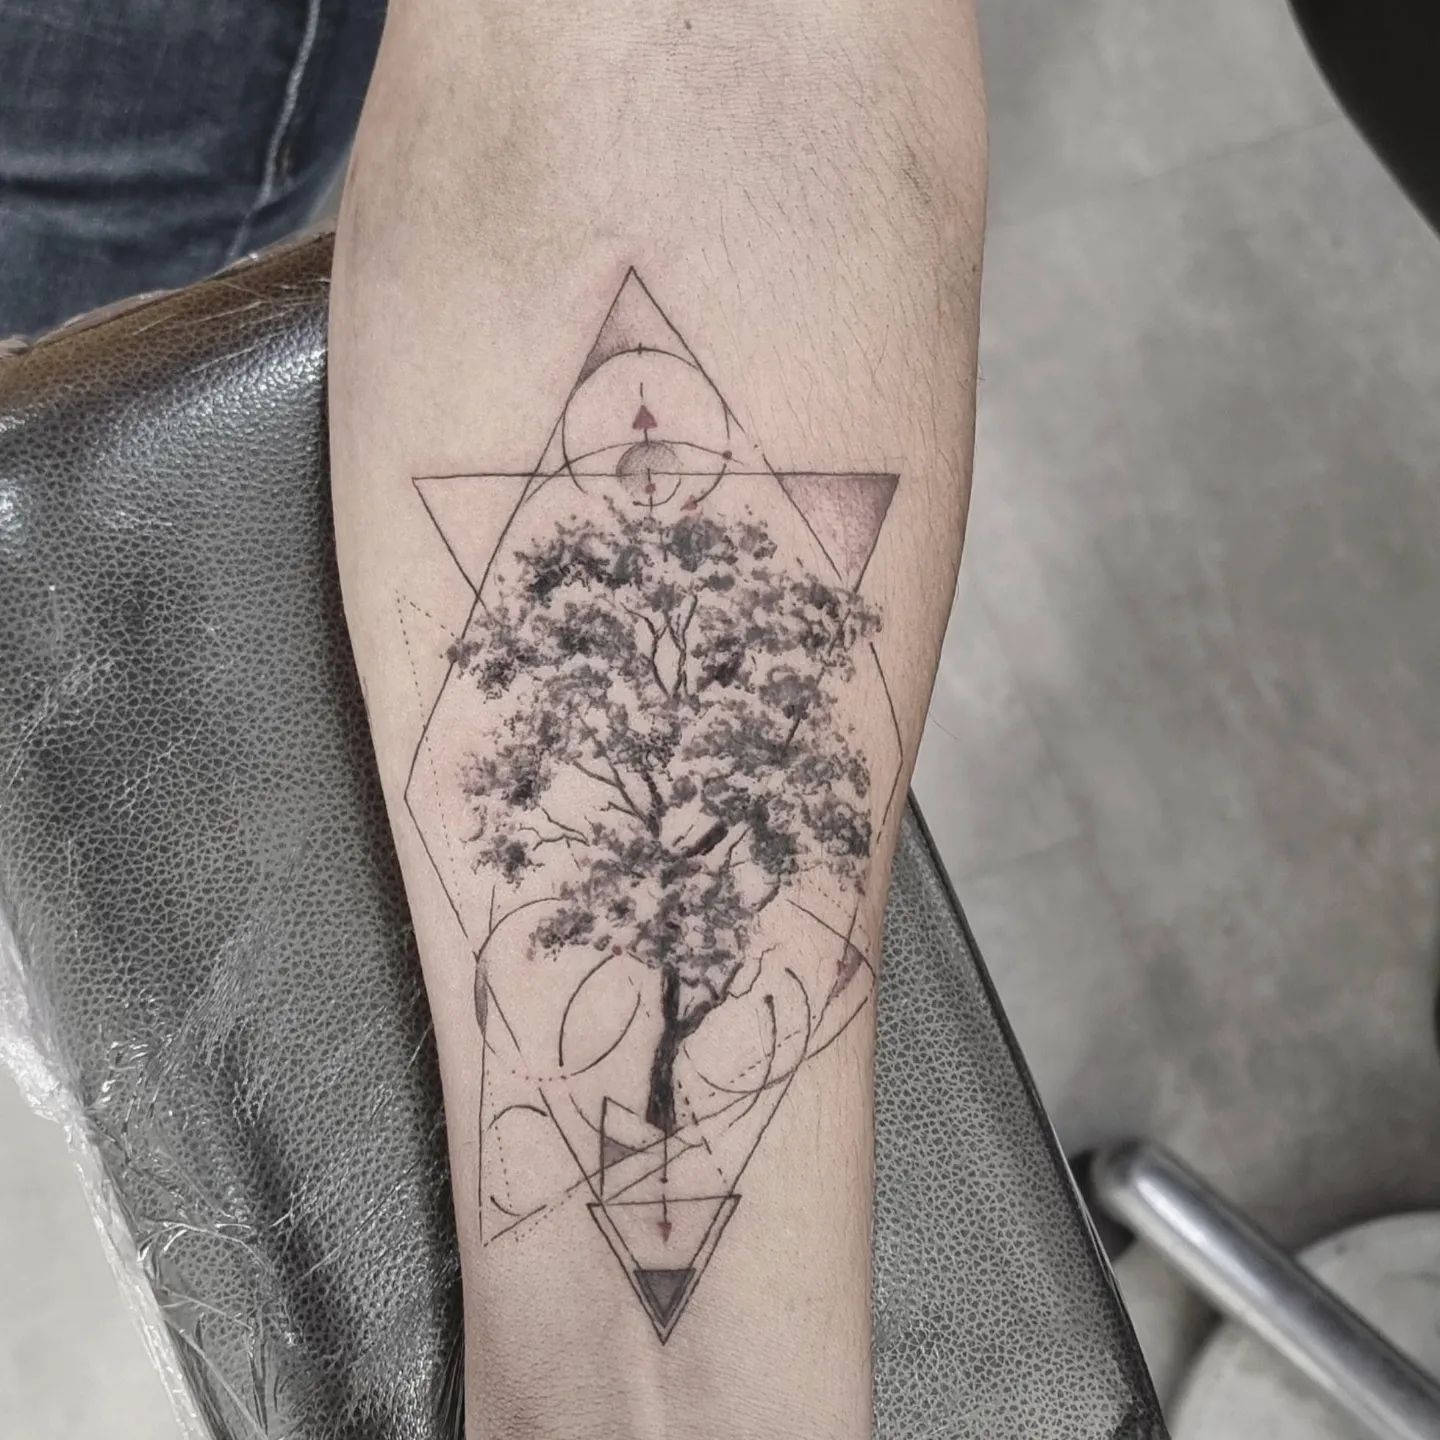 Tatuaje de árbol geométrico.